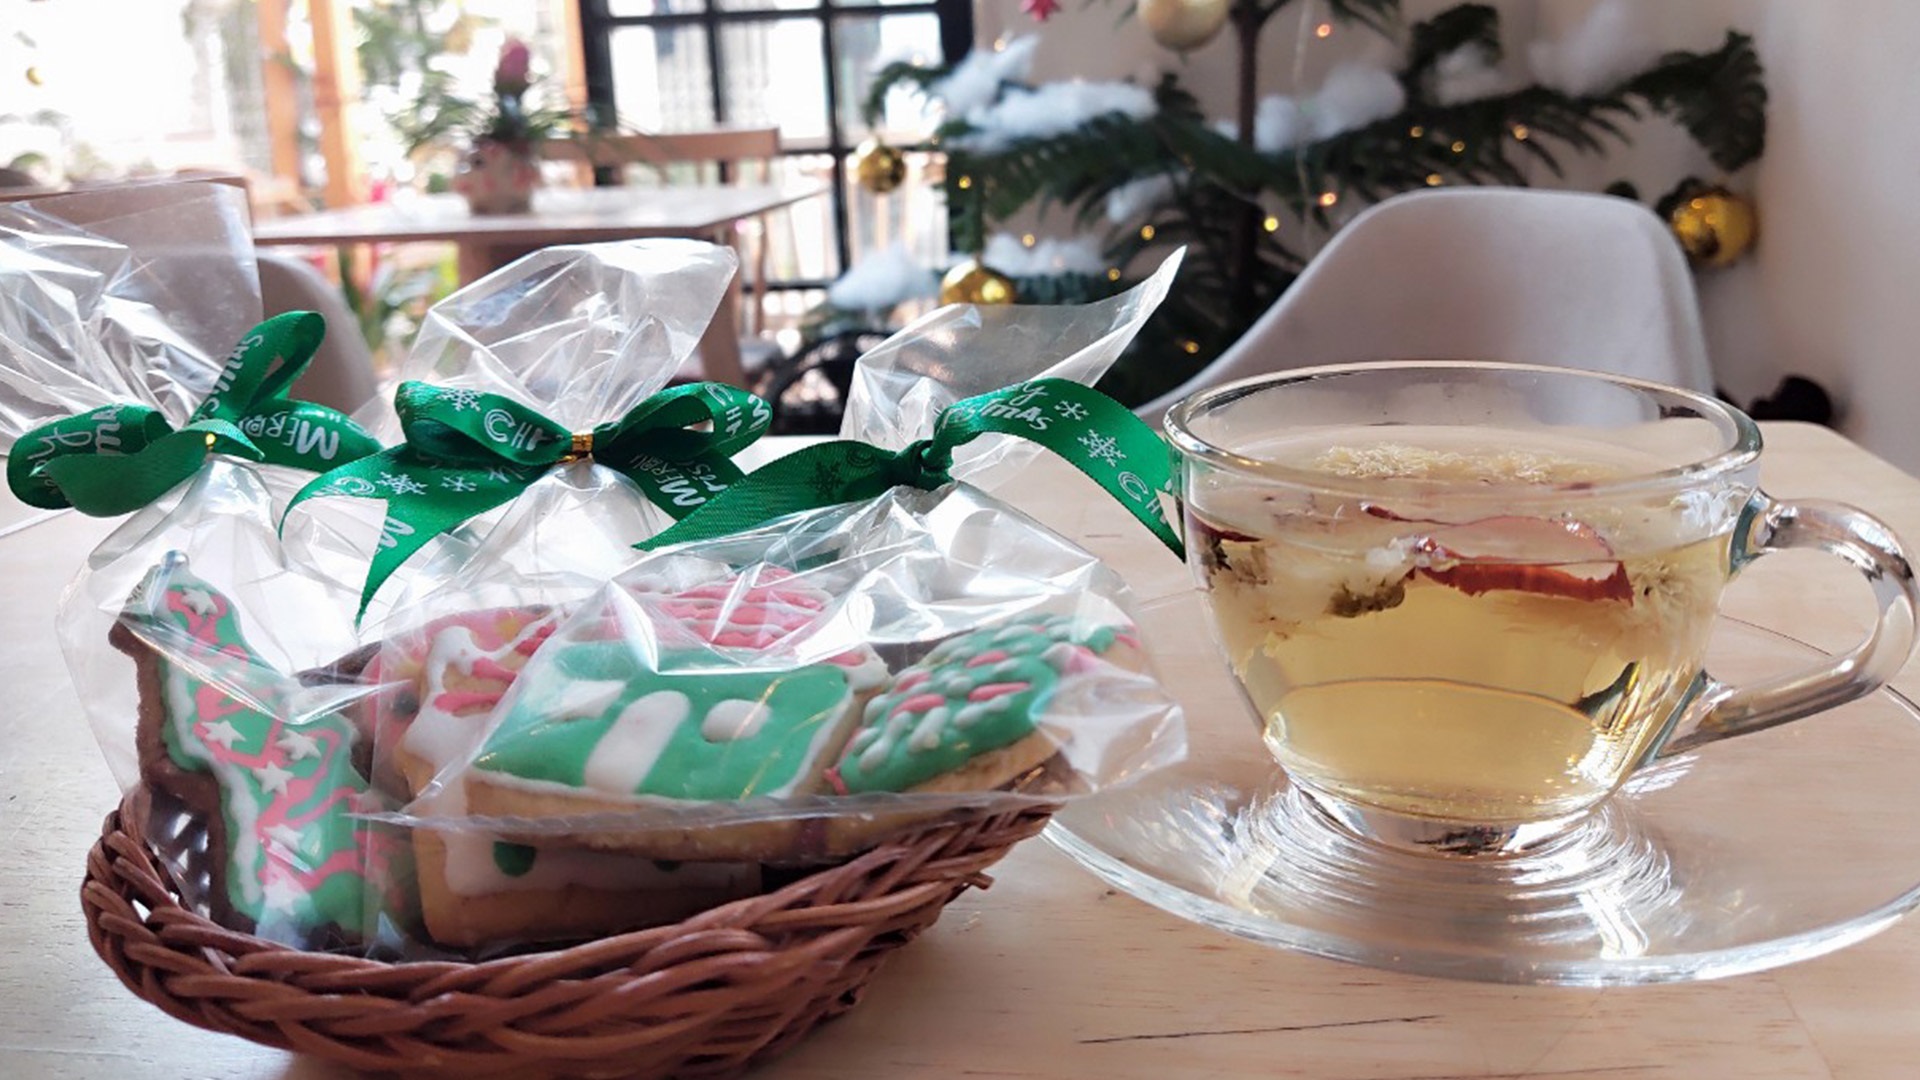 Vườn Xinh Coffee tặng quà Giáng sinh cho khách hàng có mã giảm giá VinID